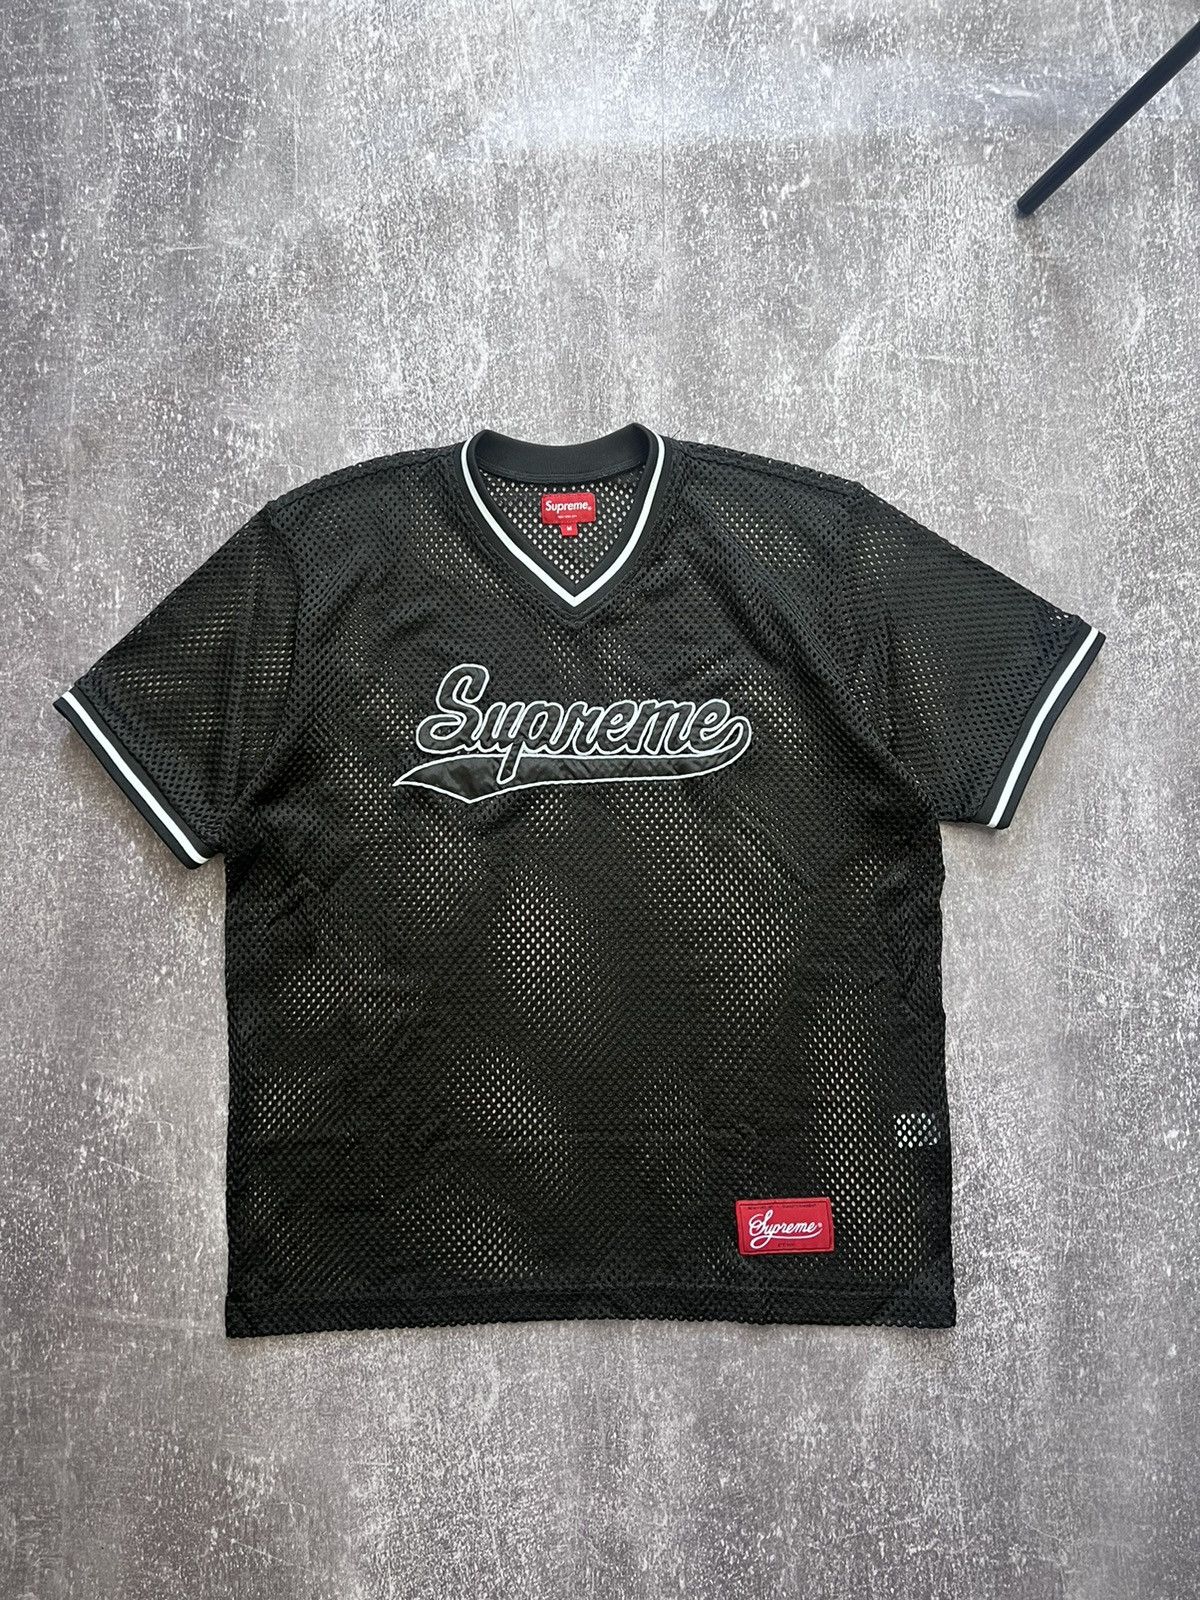 Supreme Supreme mesh baseball top black | Grailed